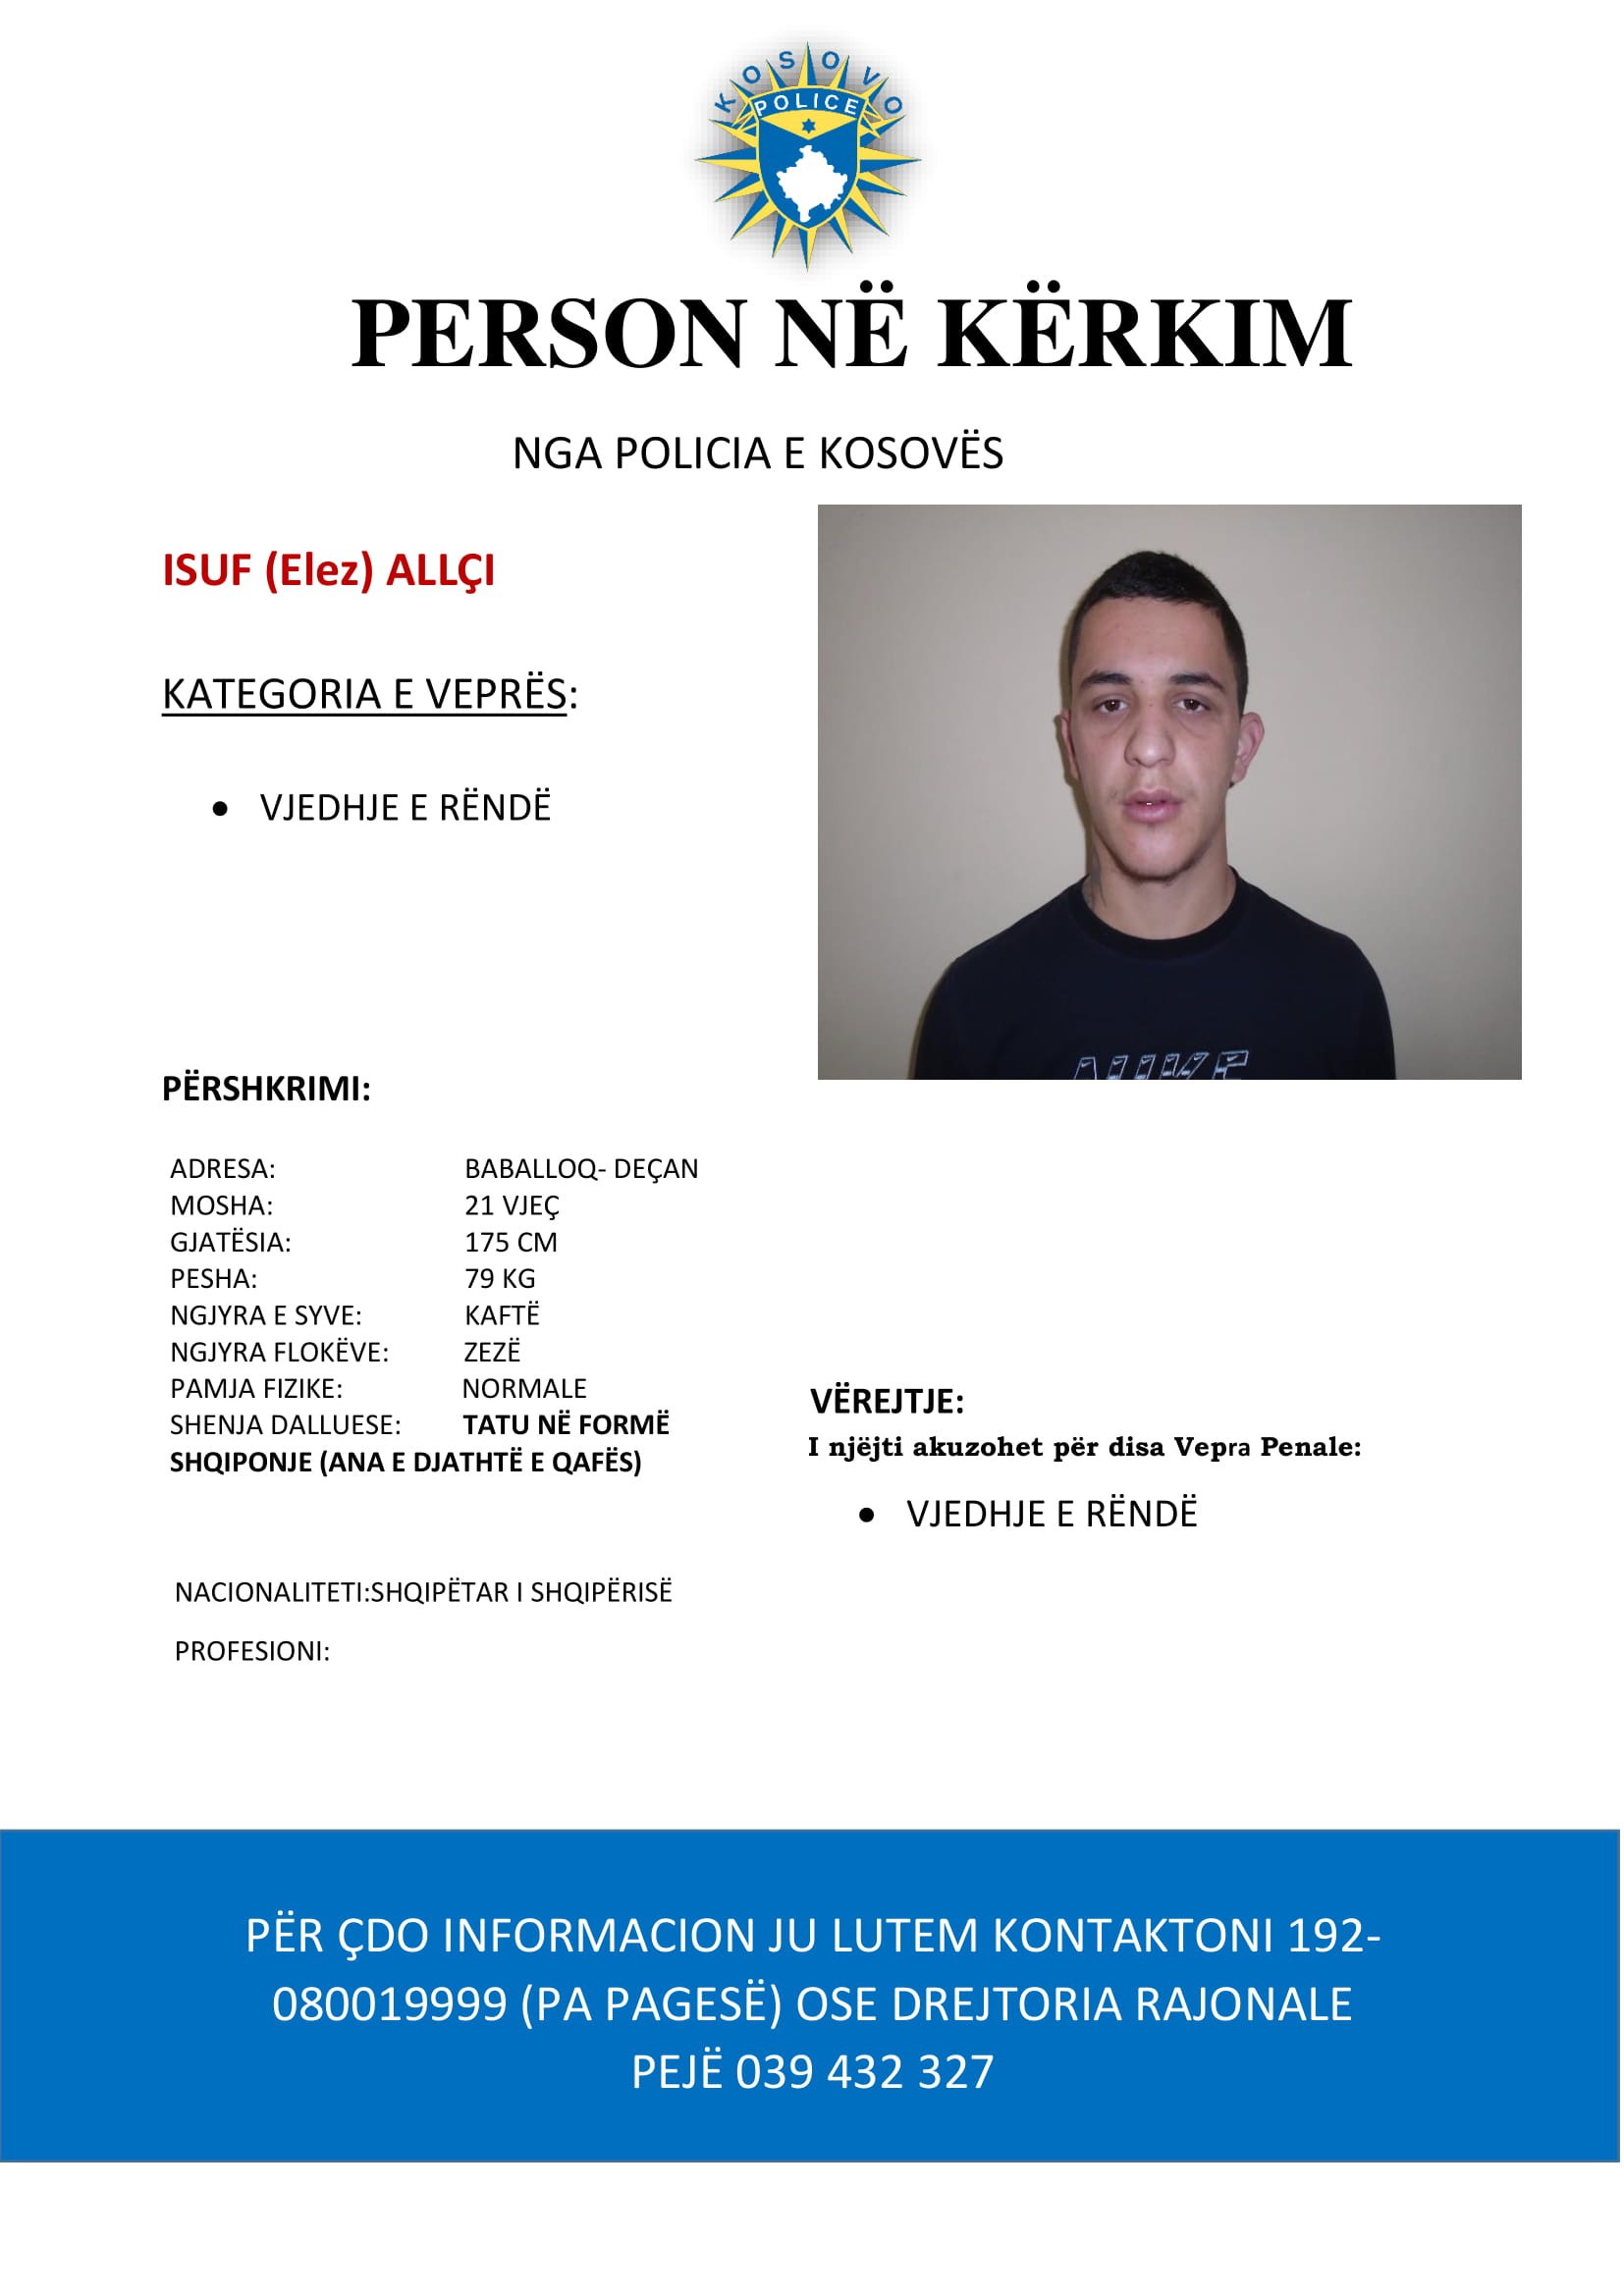 Policia e Kosovës kërkon bashkëpunim për rastin "personi në kërkim"